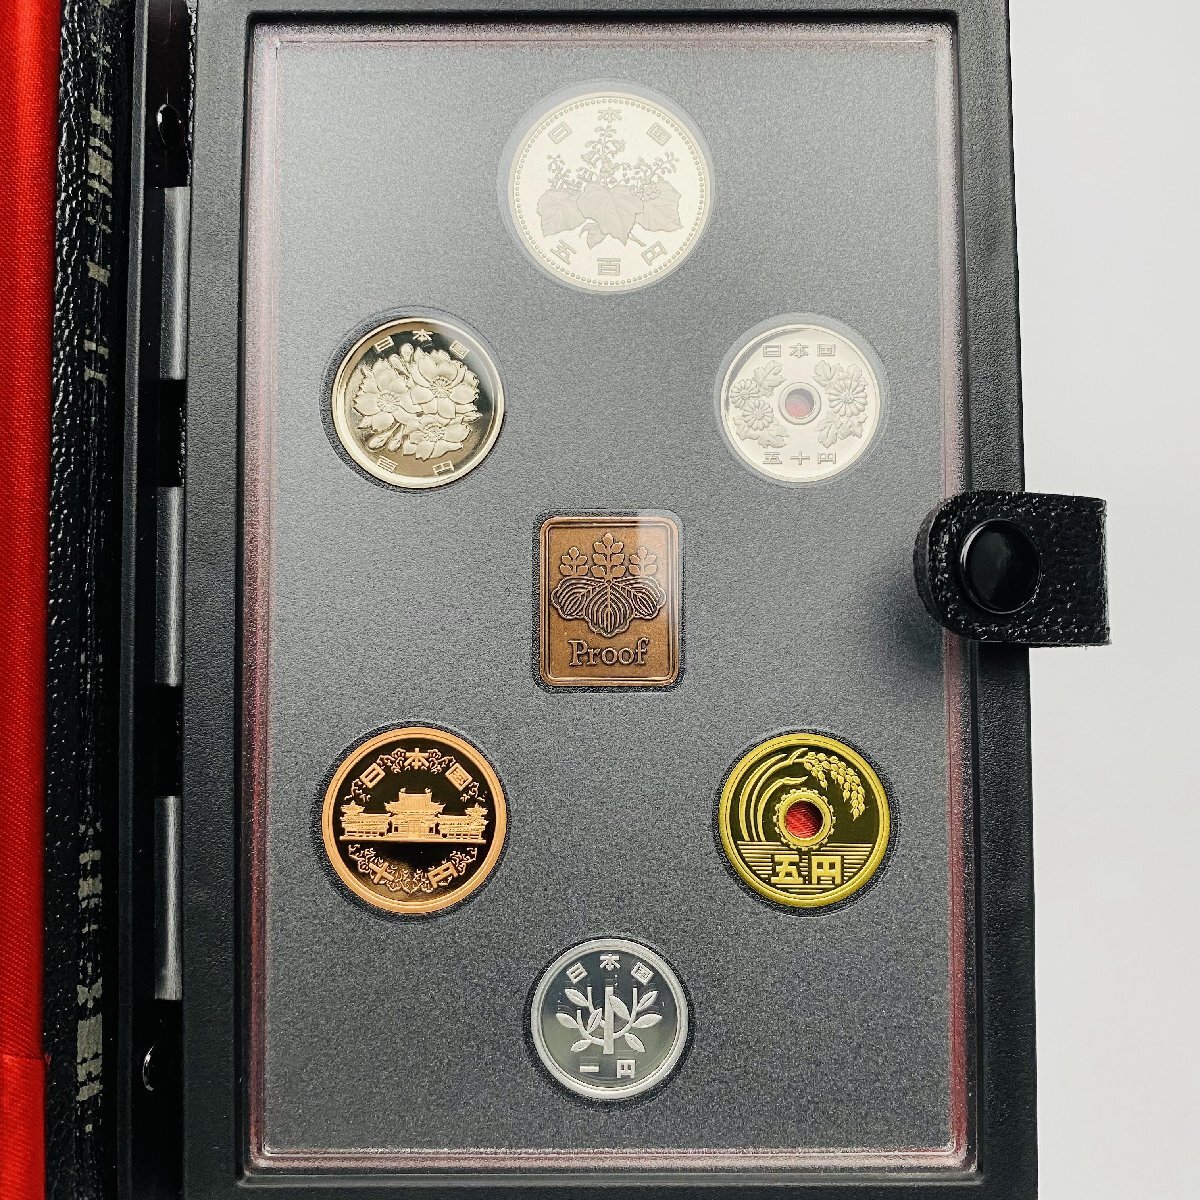 1989年 平成元年 通常プルーフ貨幣セット 額面666円 年銘板有 全揃い 記念硬貨 記念貨幣 貨幣組合 日本円 限定貨幣 コレクション P1989_画像2